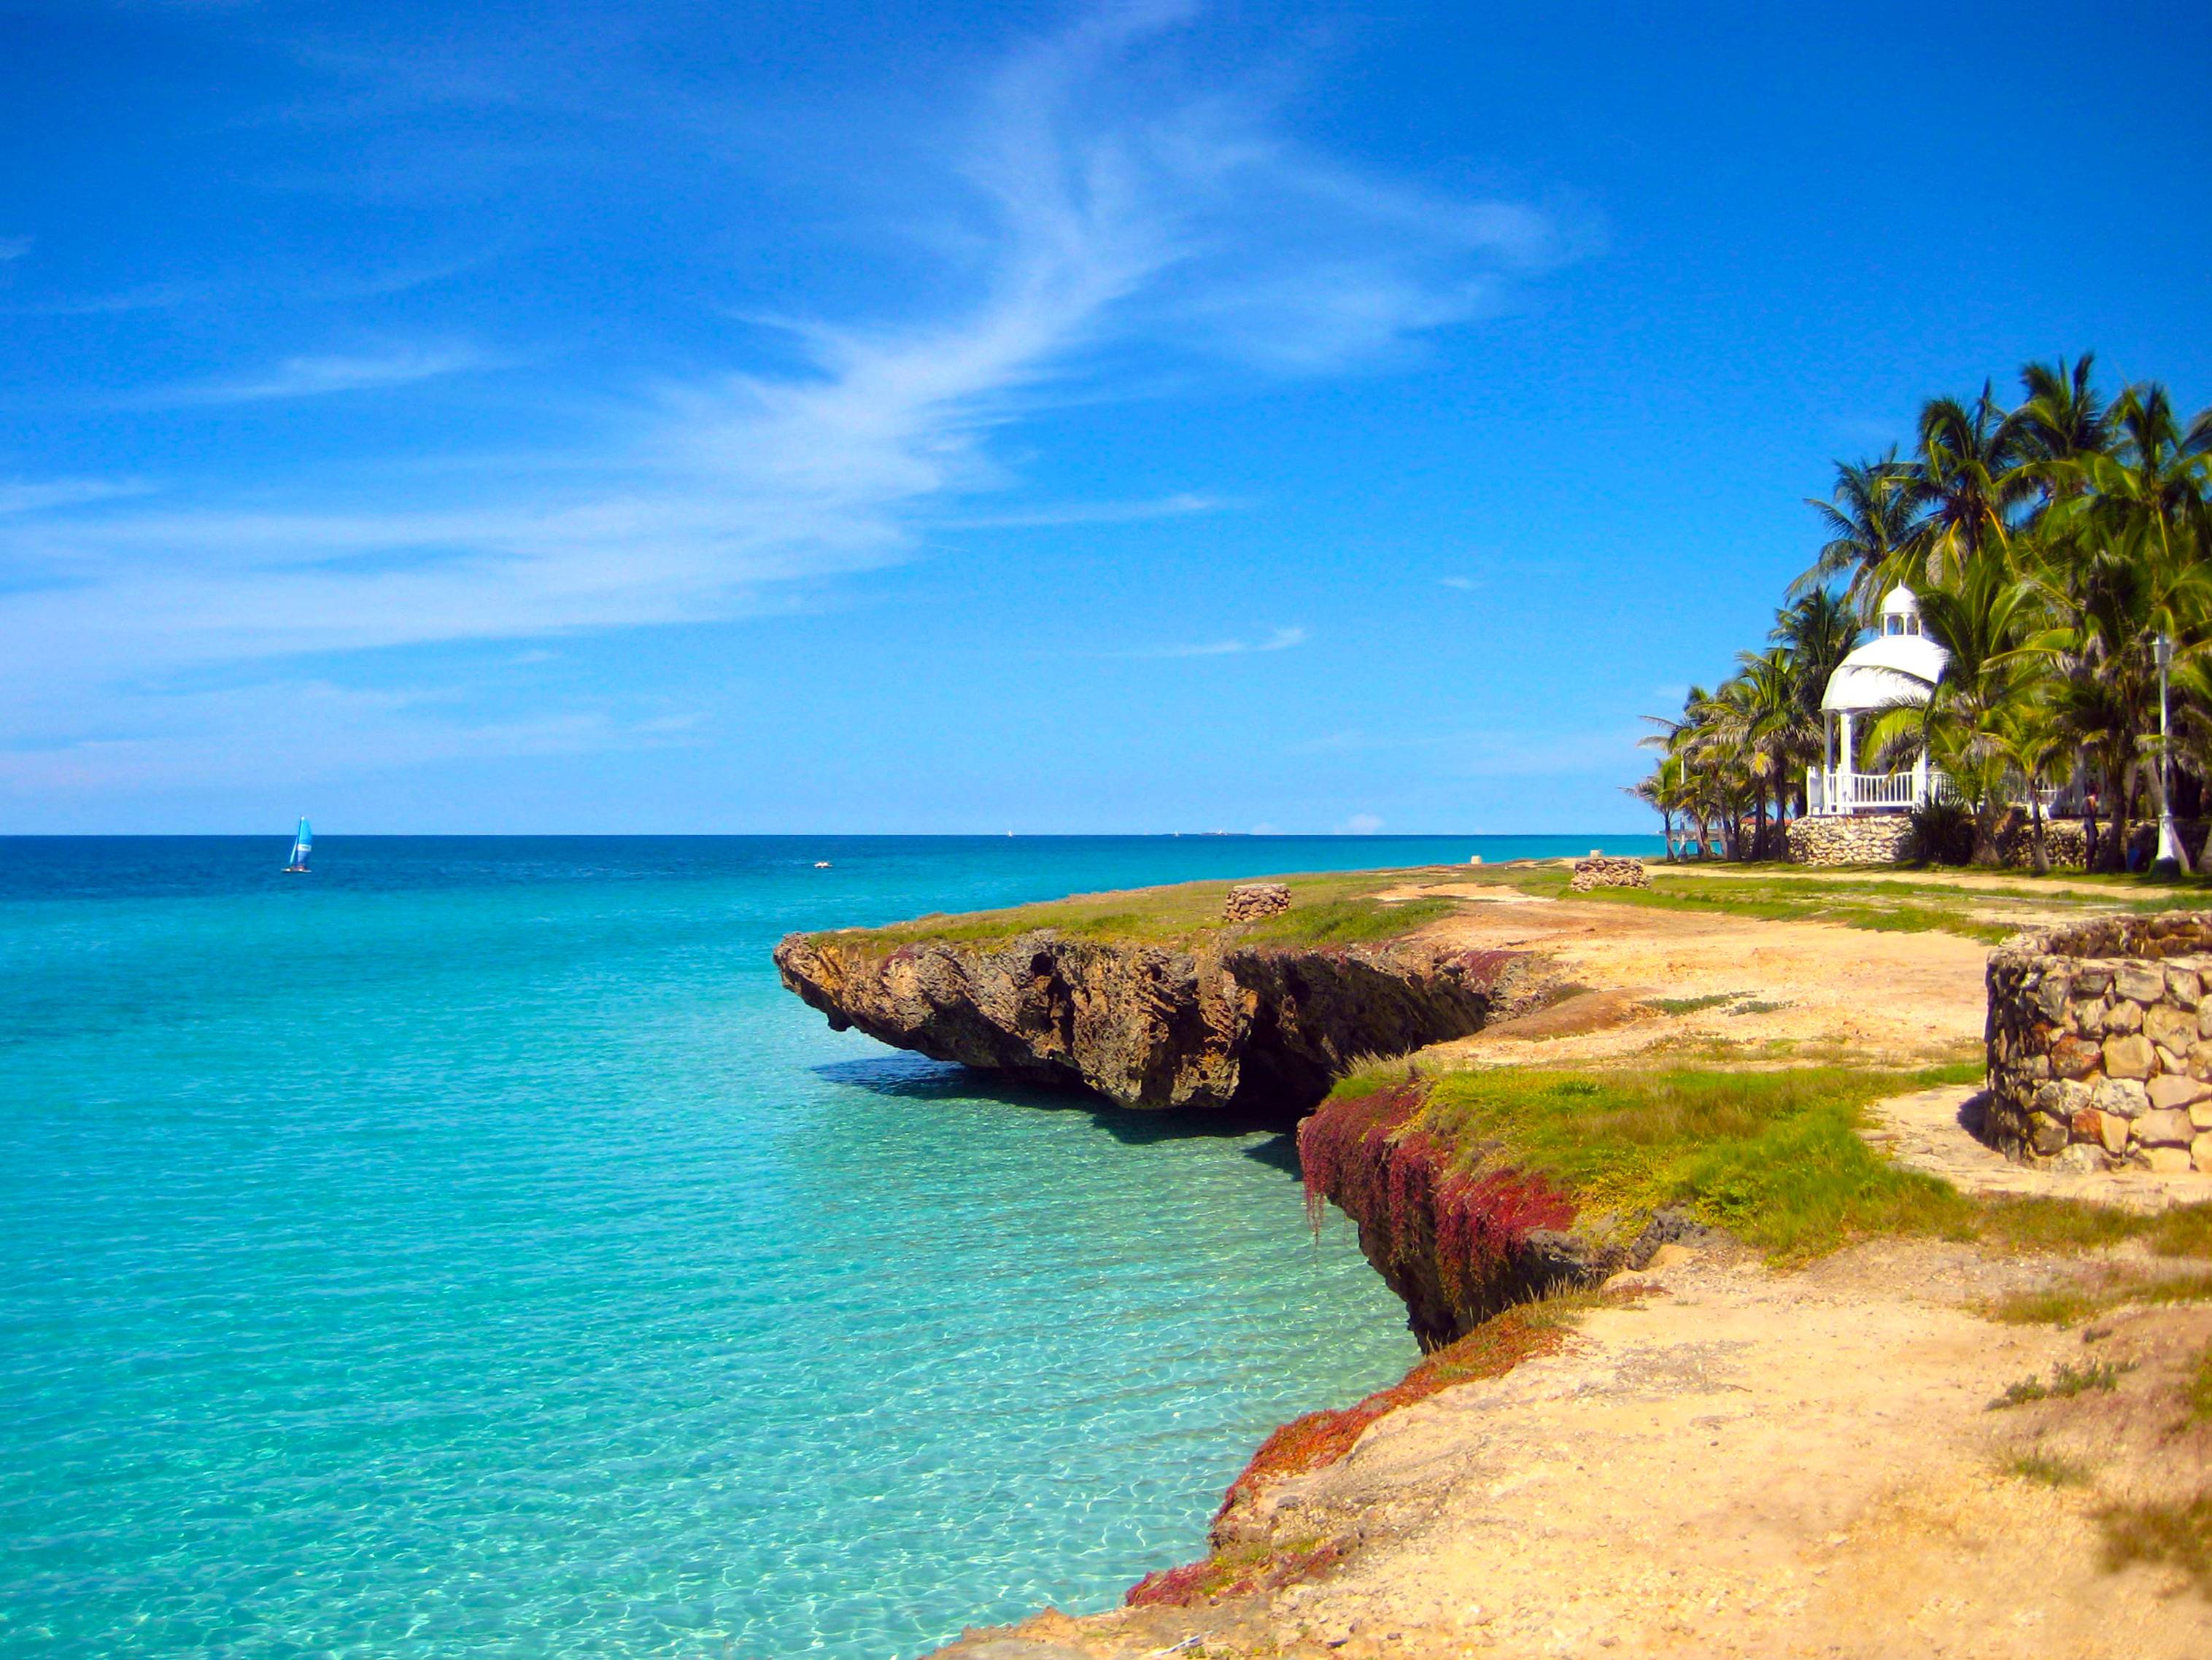 دانلود عکس سواحل زیبای جزایر کارائیب با کیفیت